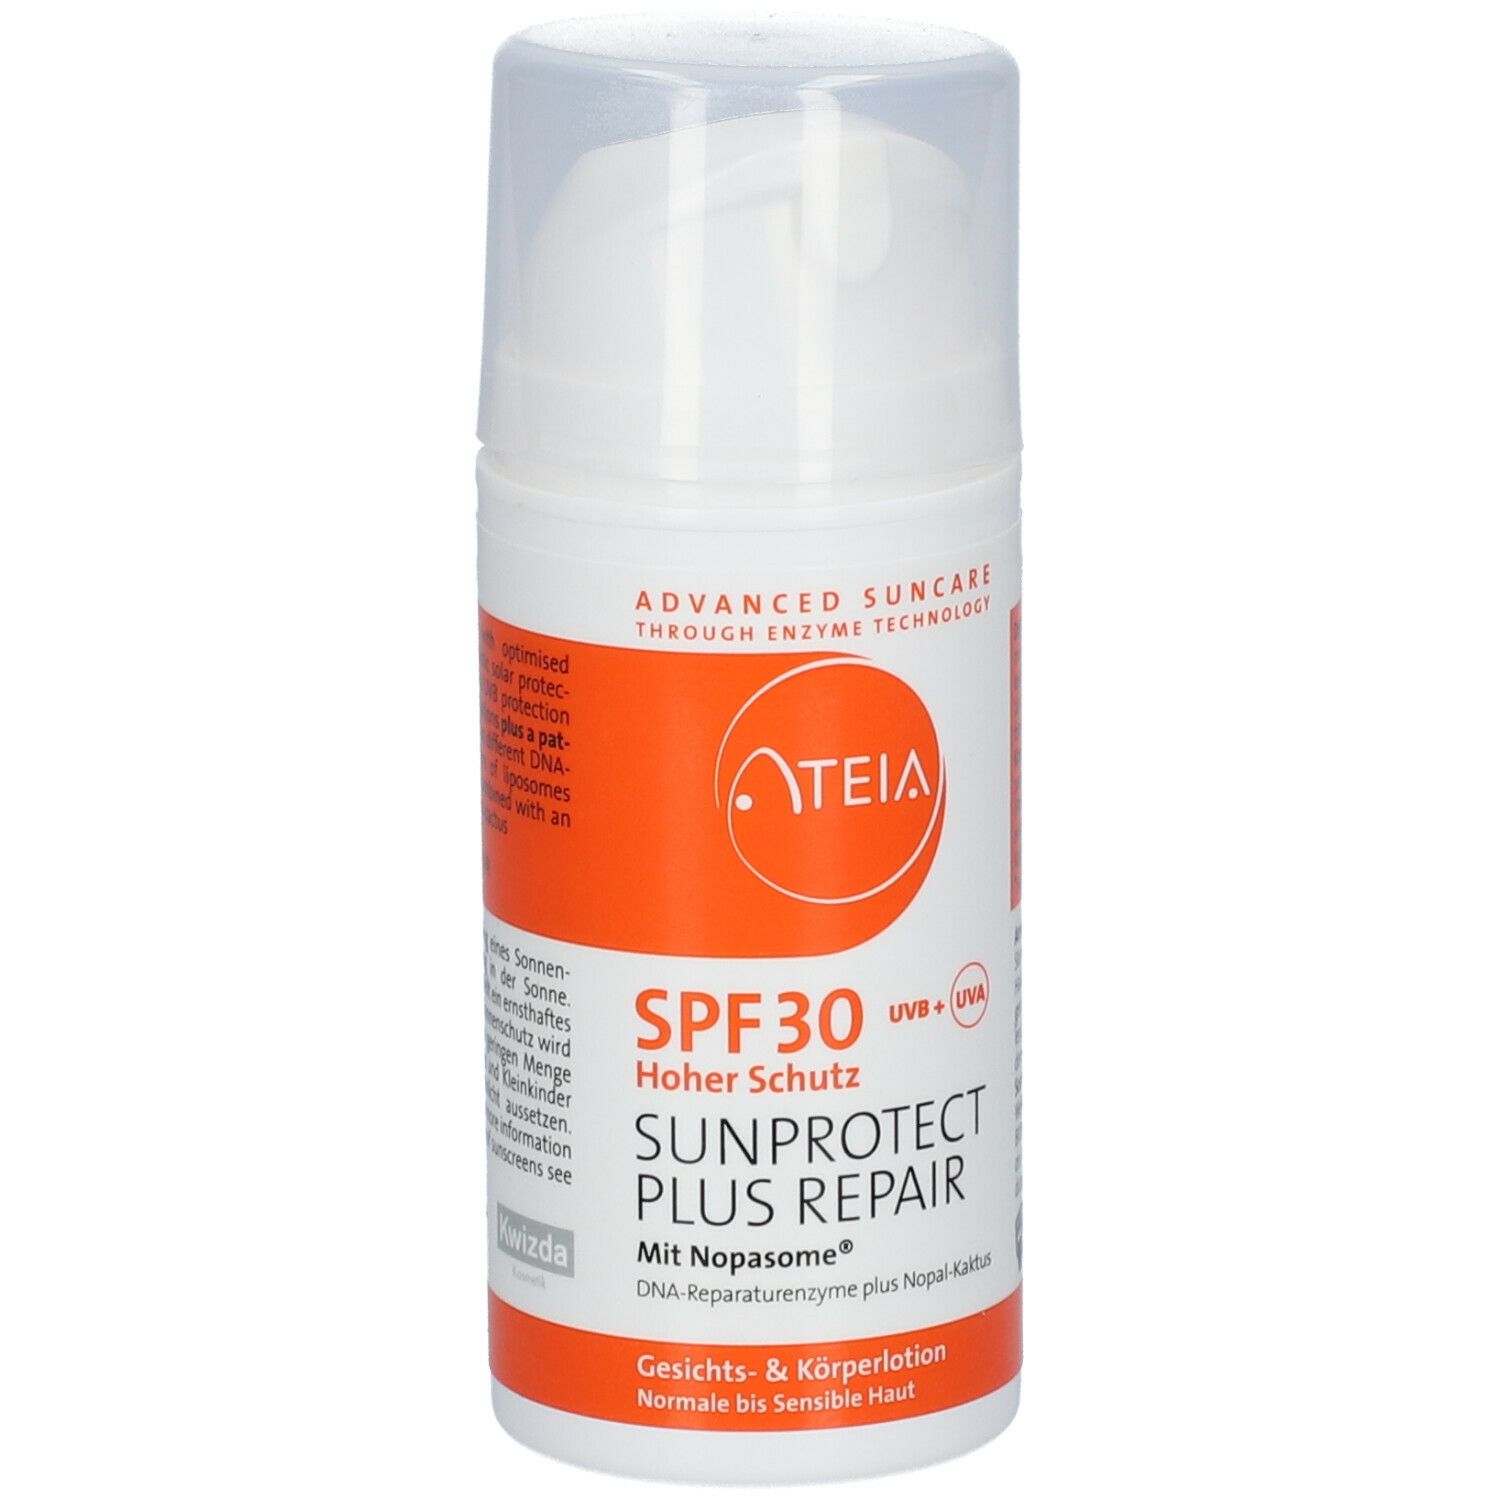 ATEIA® SPF 30 Sunprotext Plus Repair